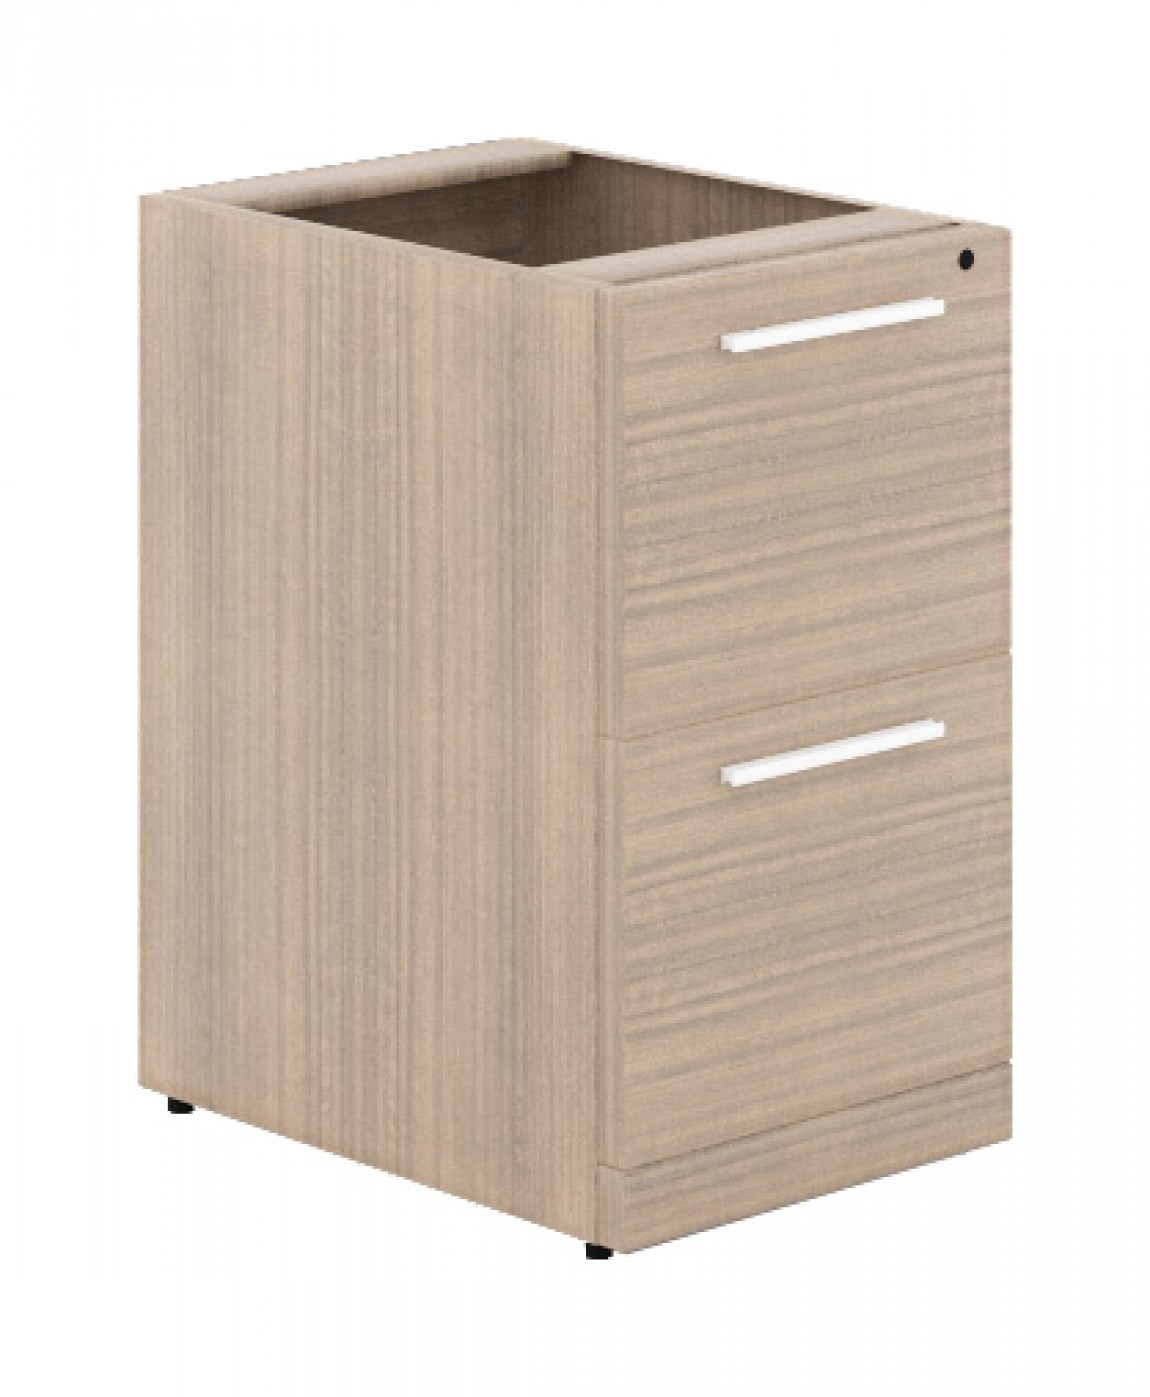 2 Drawer Pedestal for Corp Design Desks